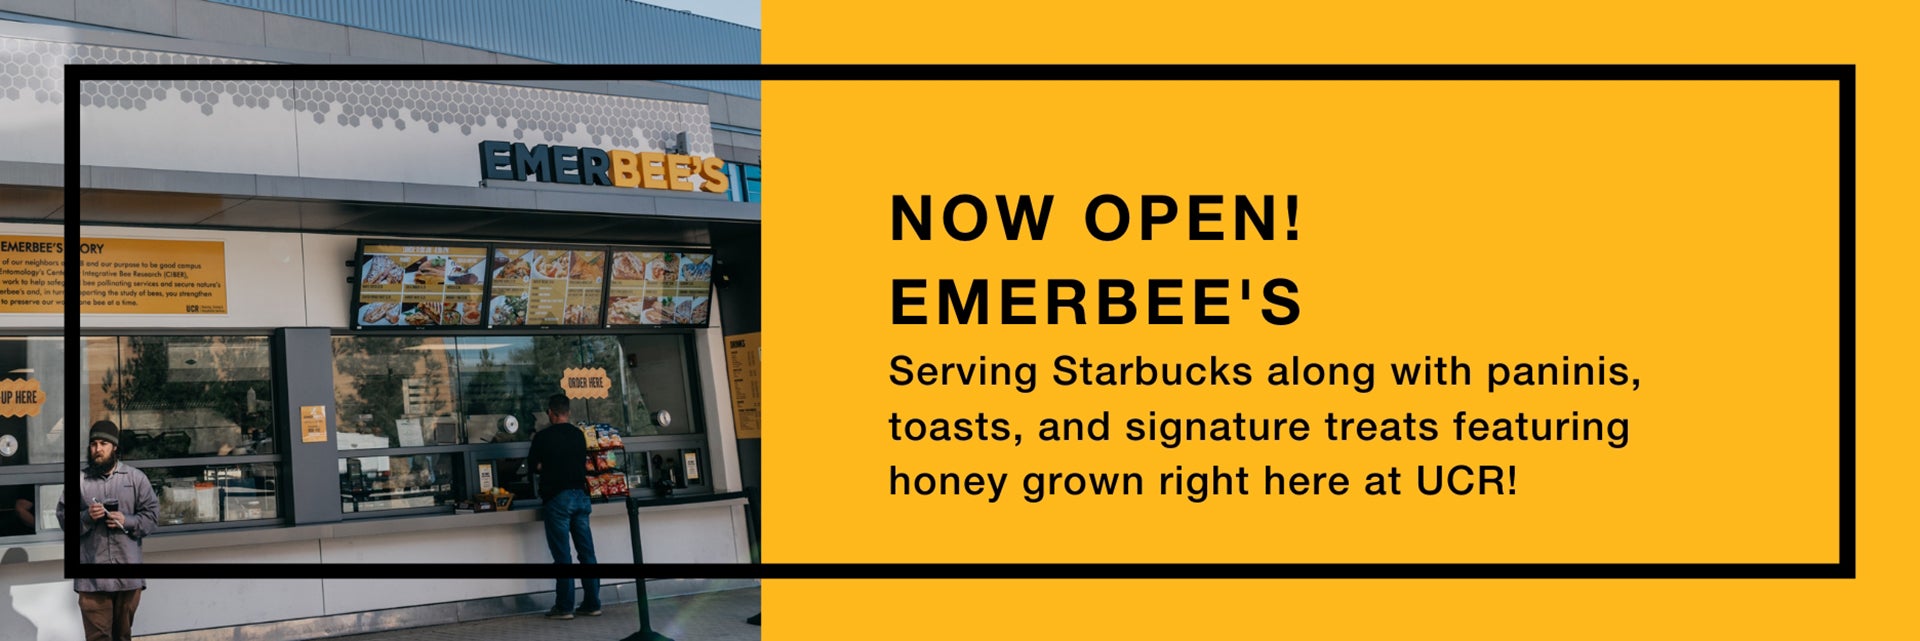 Now Open Emerbee's